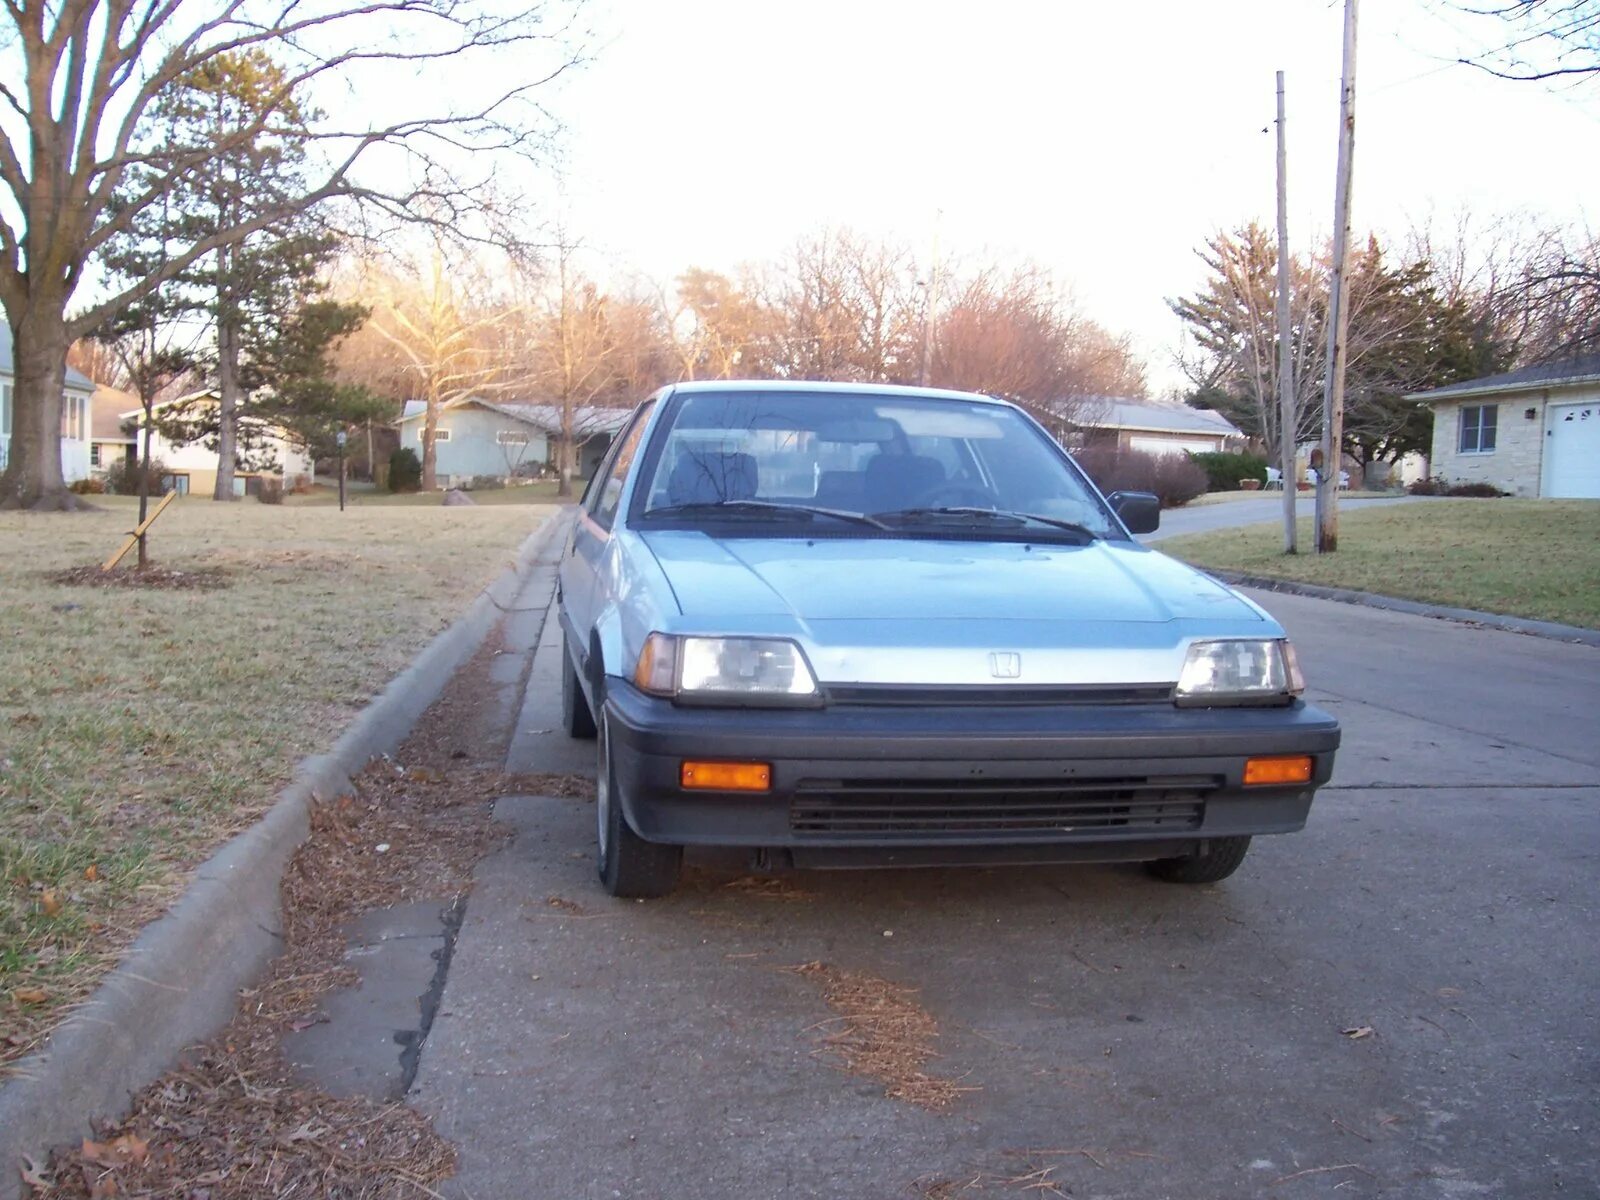 Honda Civic 1986. Honda Civic 1986 Hatchback. Honda Civic DX 1986. Хонда Цивик 1986 седан. Хонда 1986